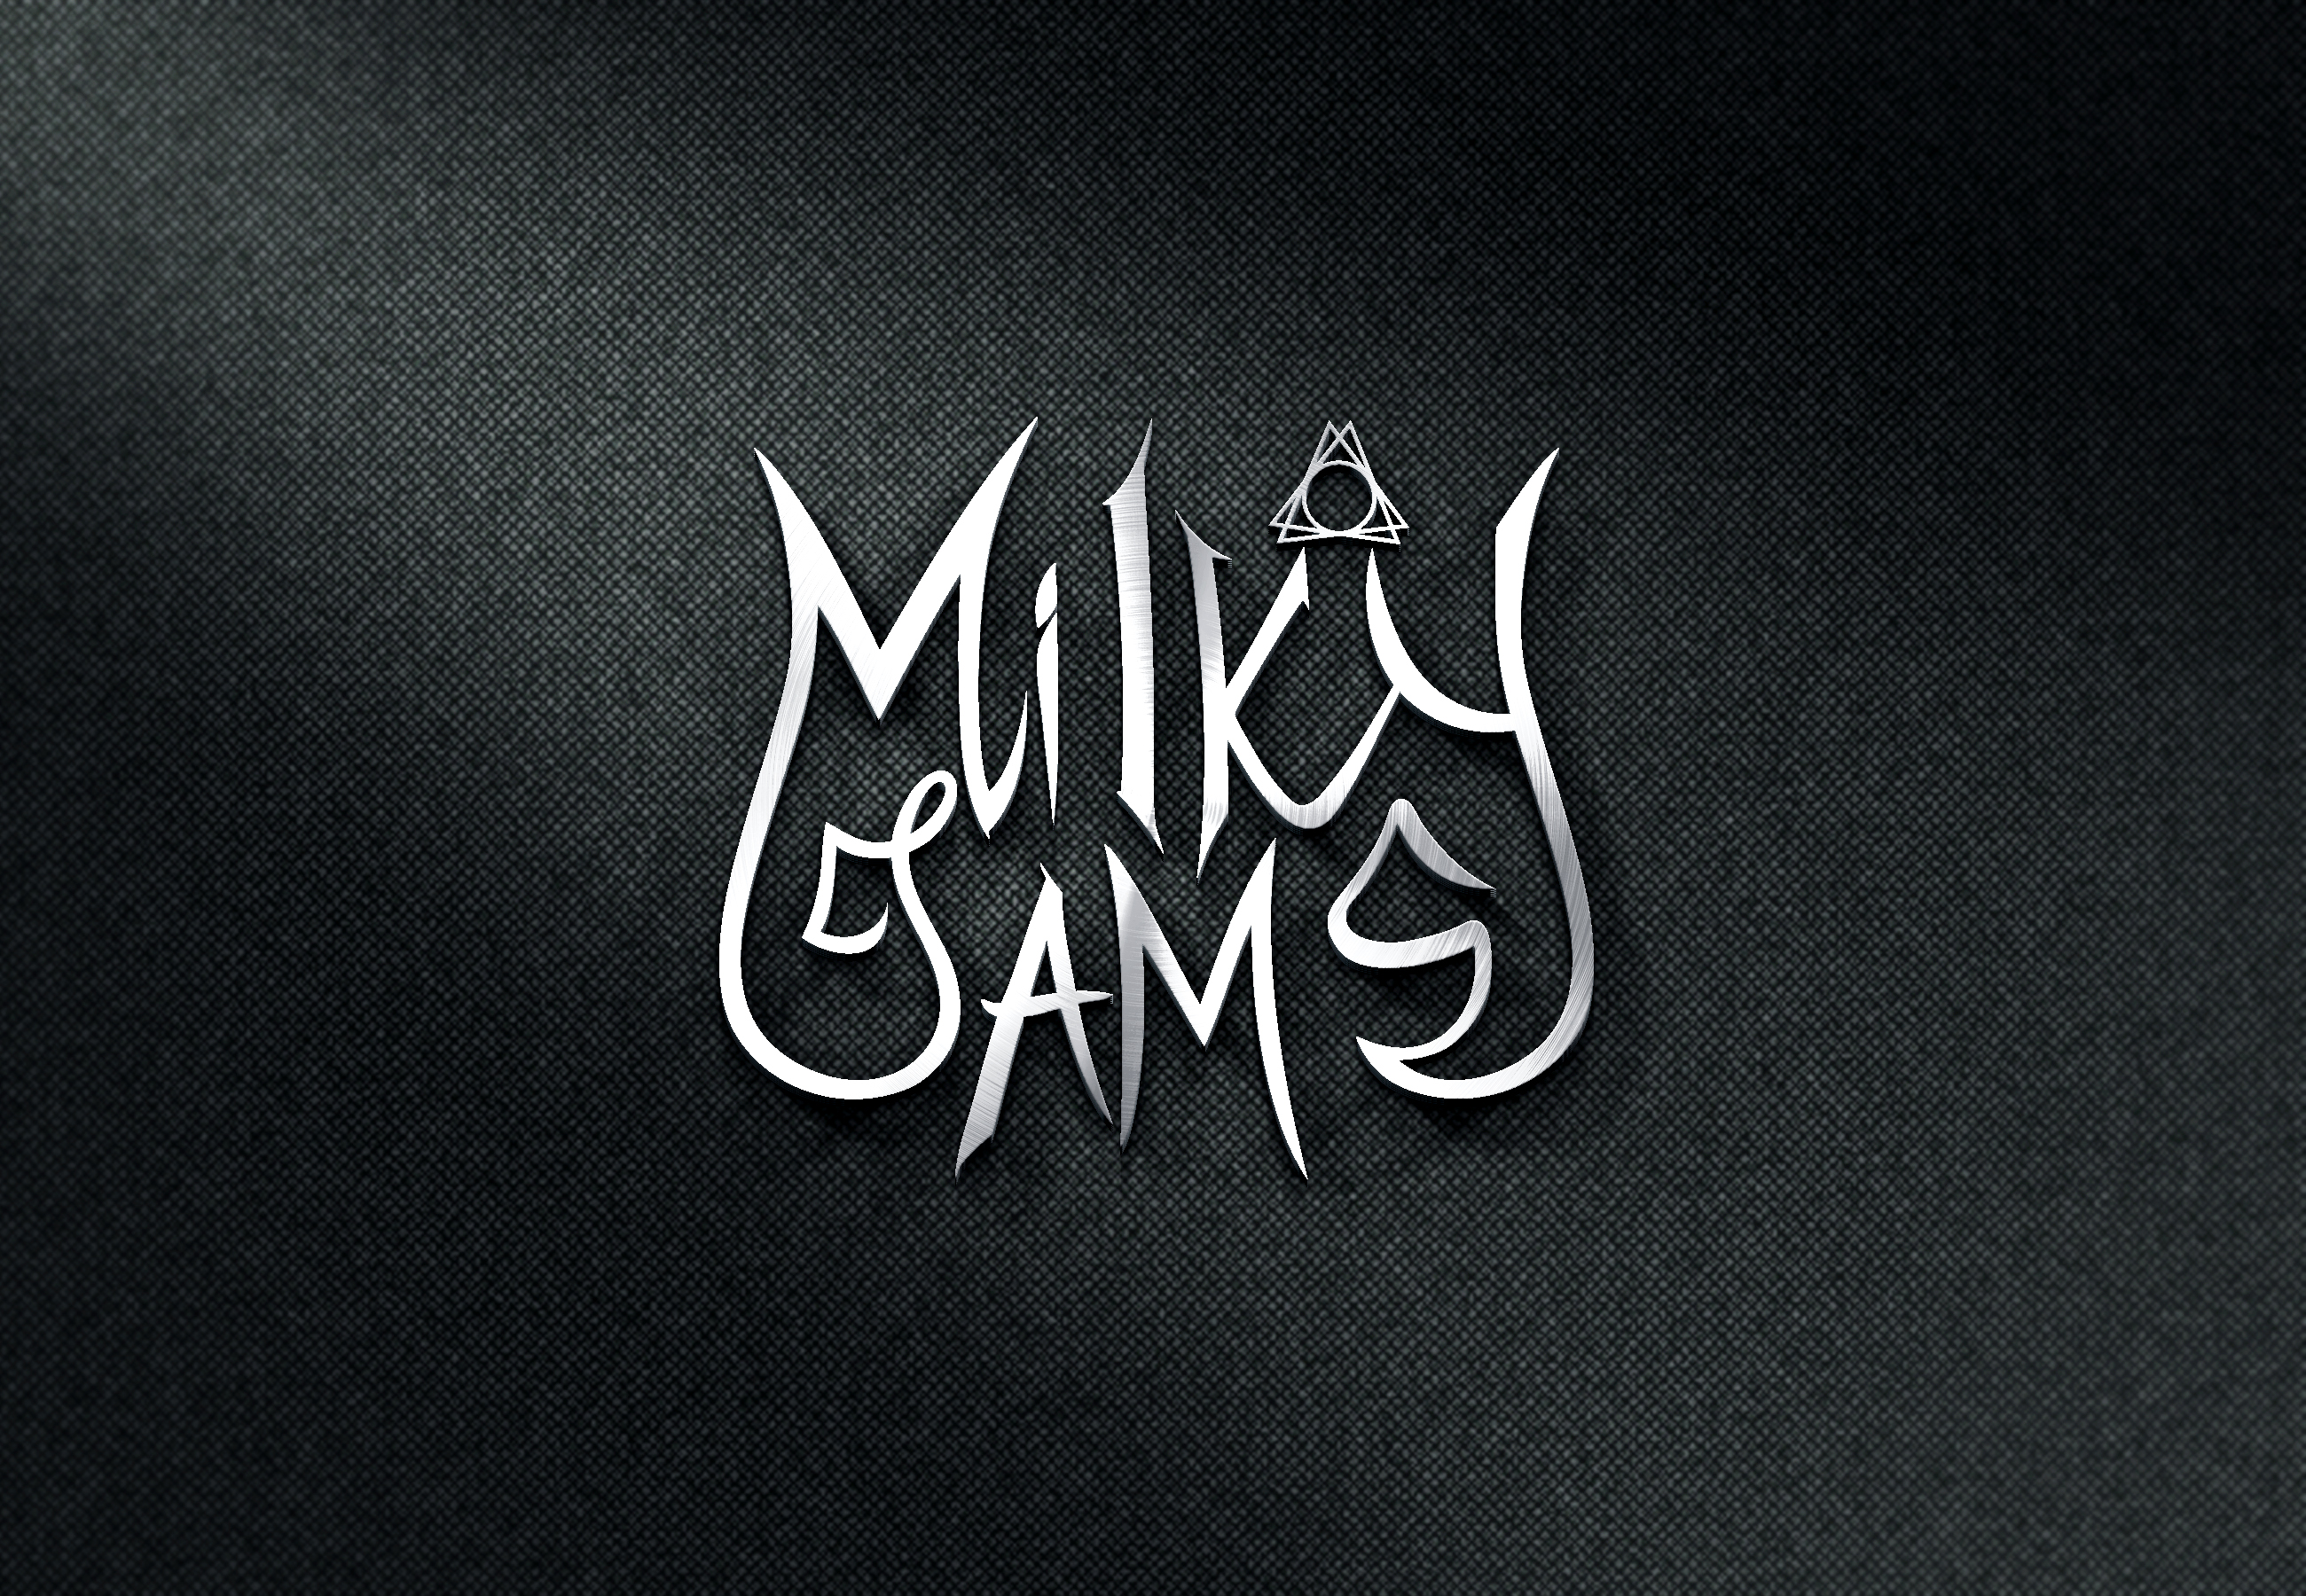 Logo Milky Jams